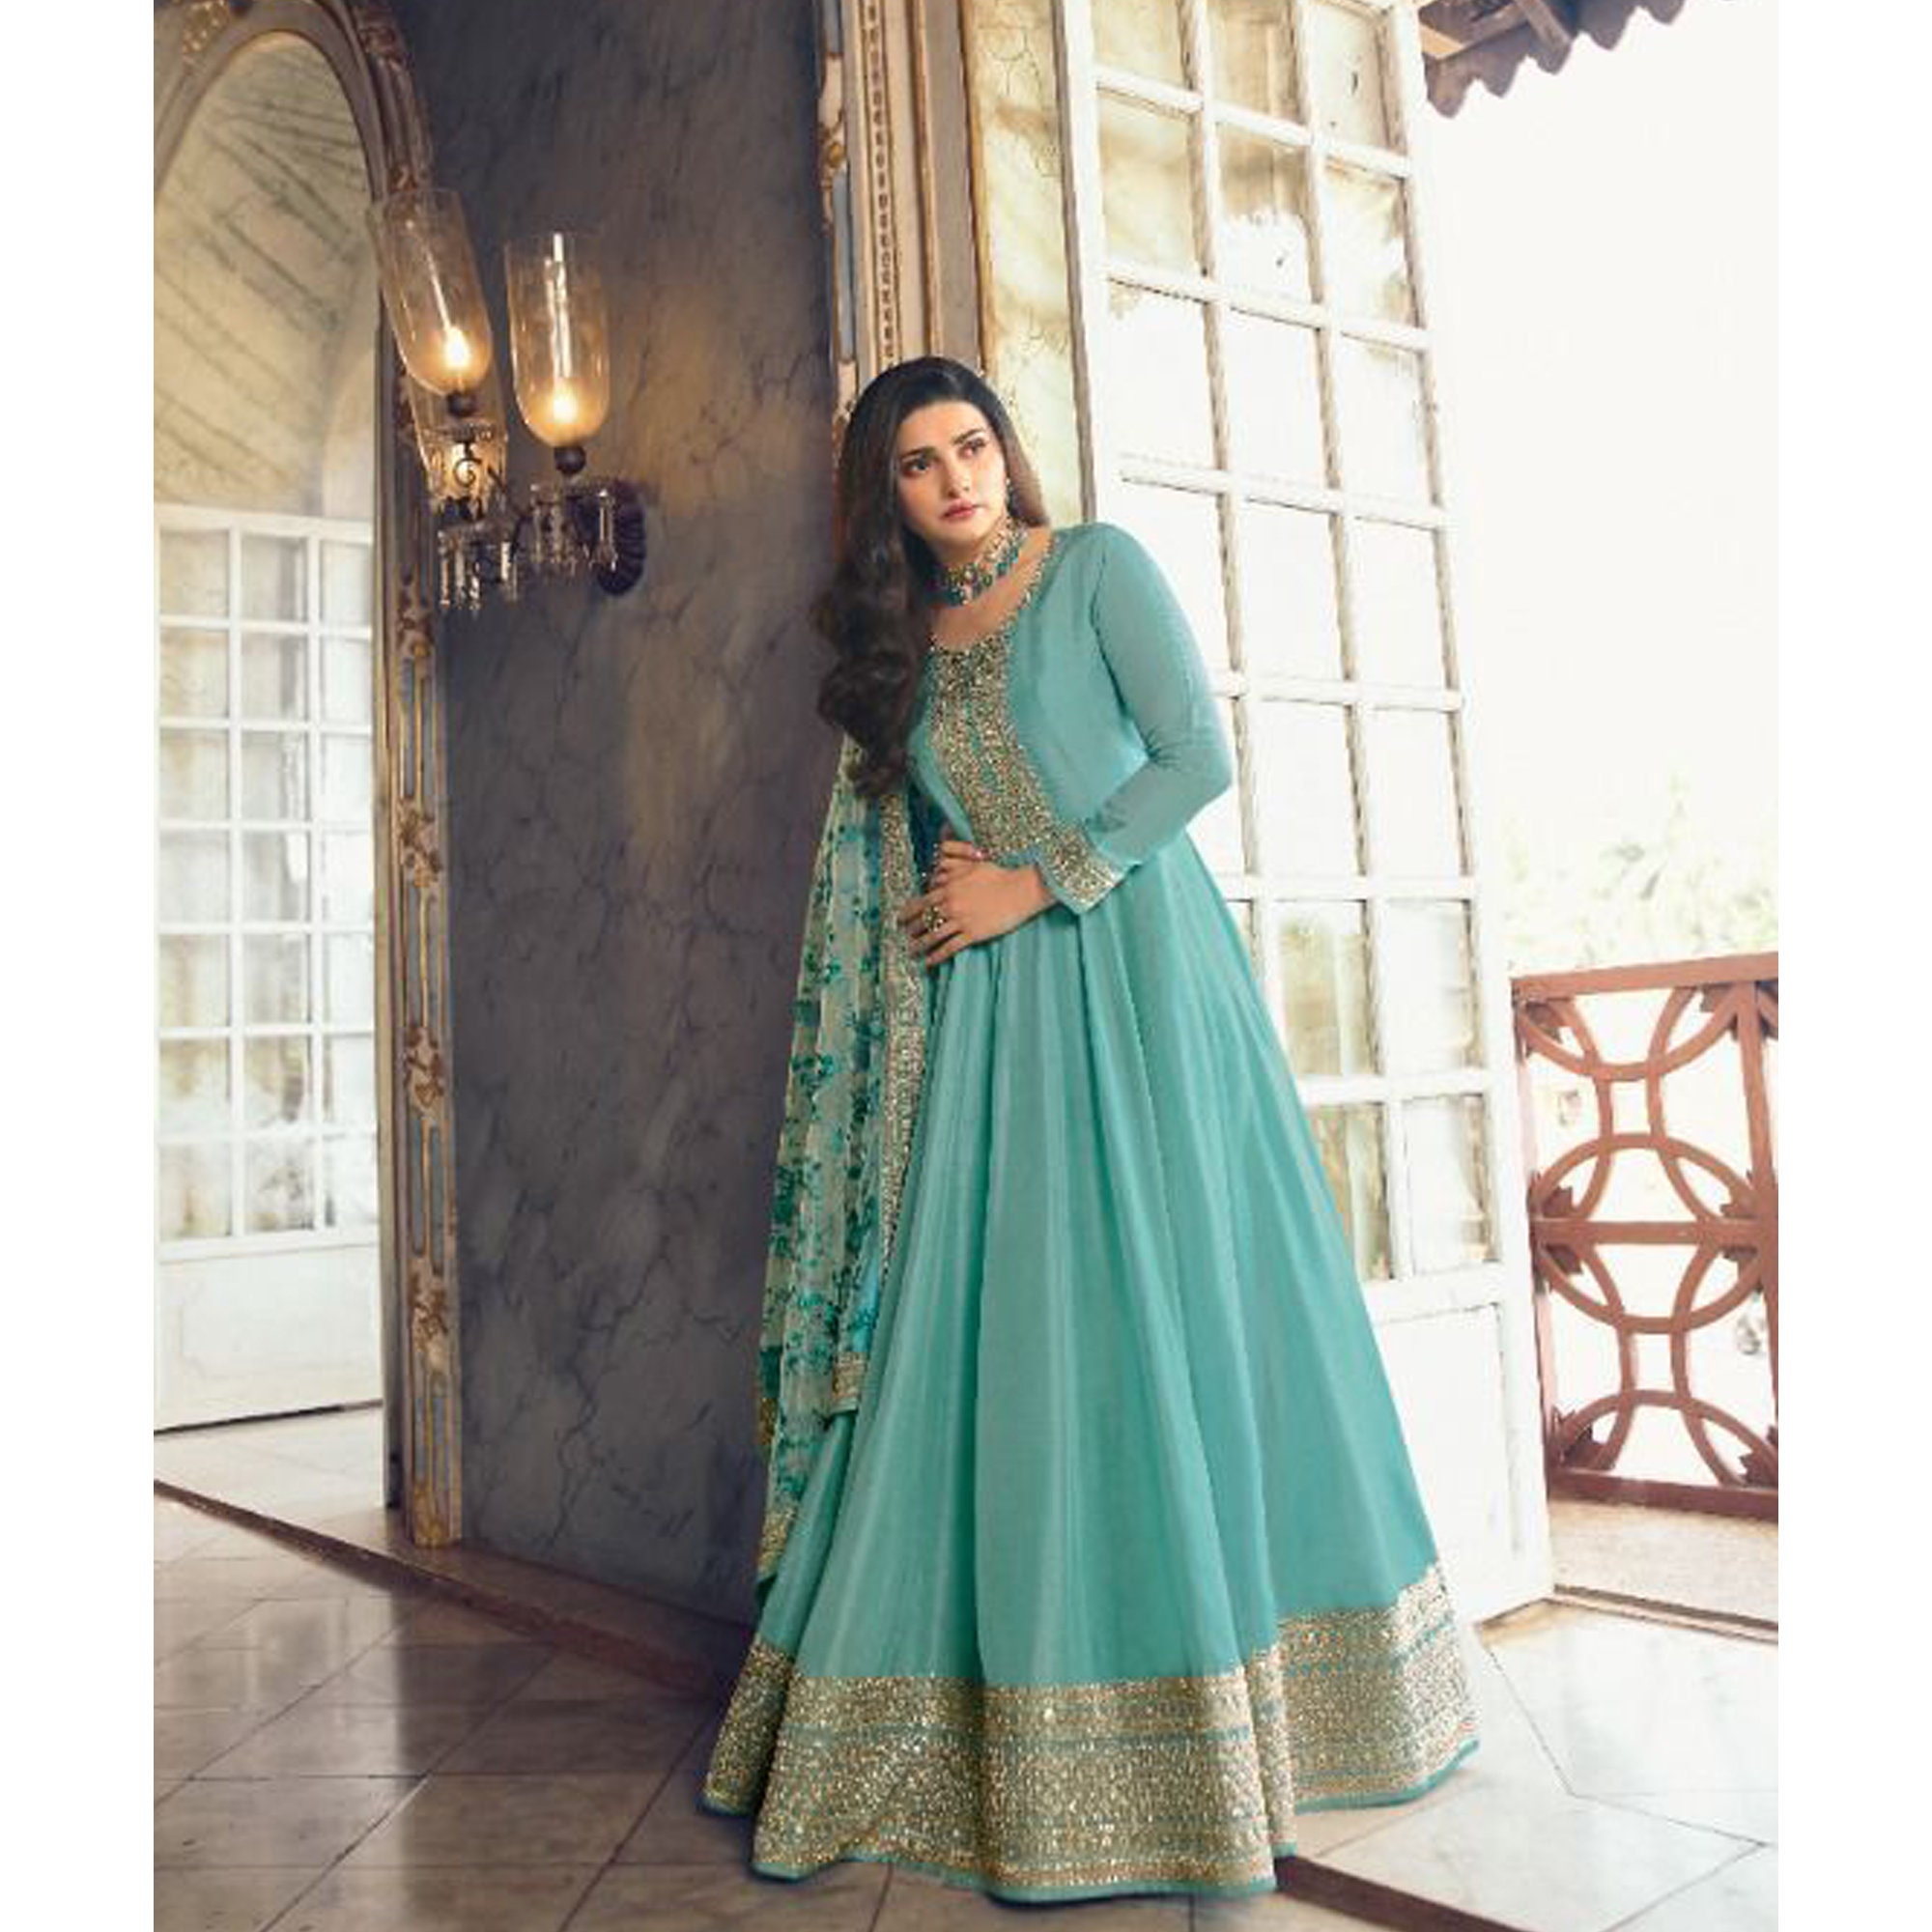 Buy Anarkali Suit and Anarkali Dress Online for Women | KALKI Fashion |  Indian gowns dresses, Anarkali dress, Fashion dresses